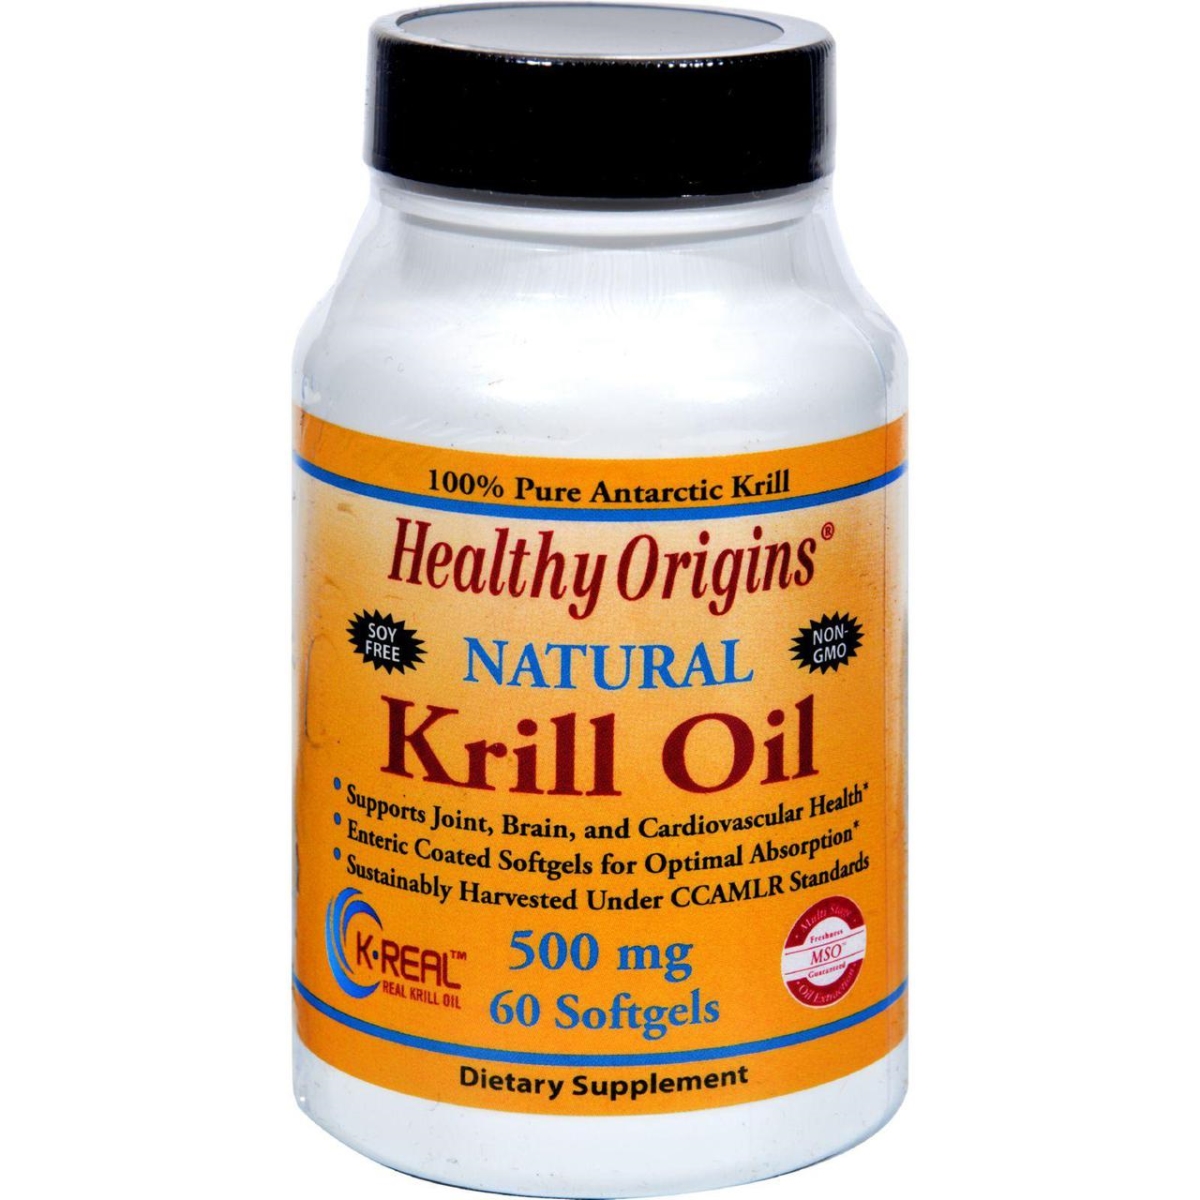 Hg1352368 500 Mg Krill Oil - 60 Softgels